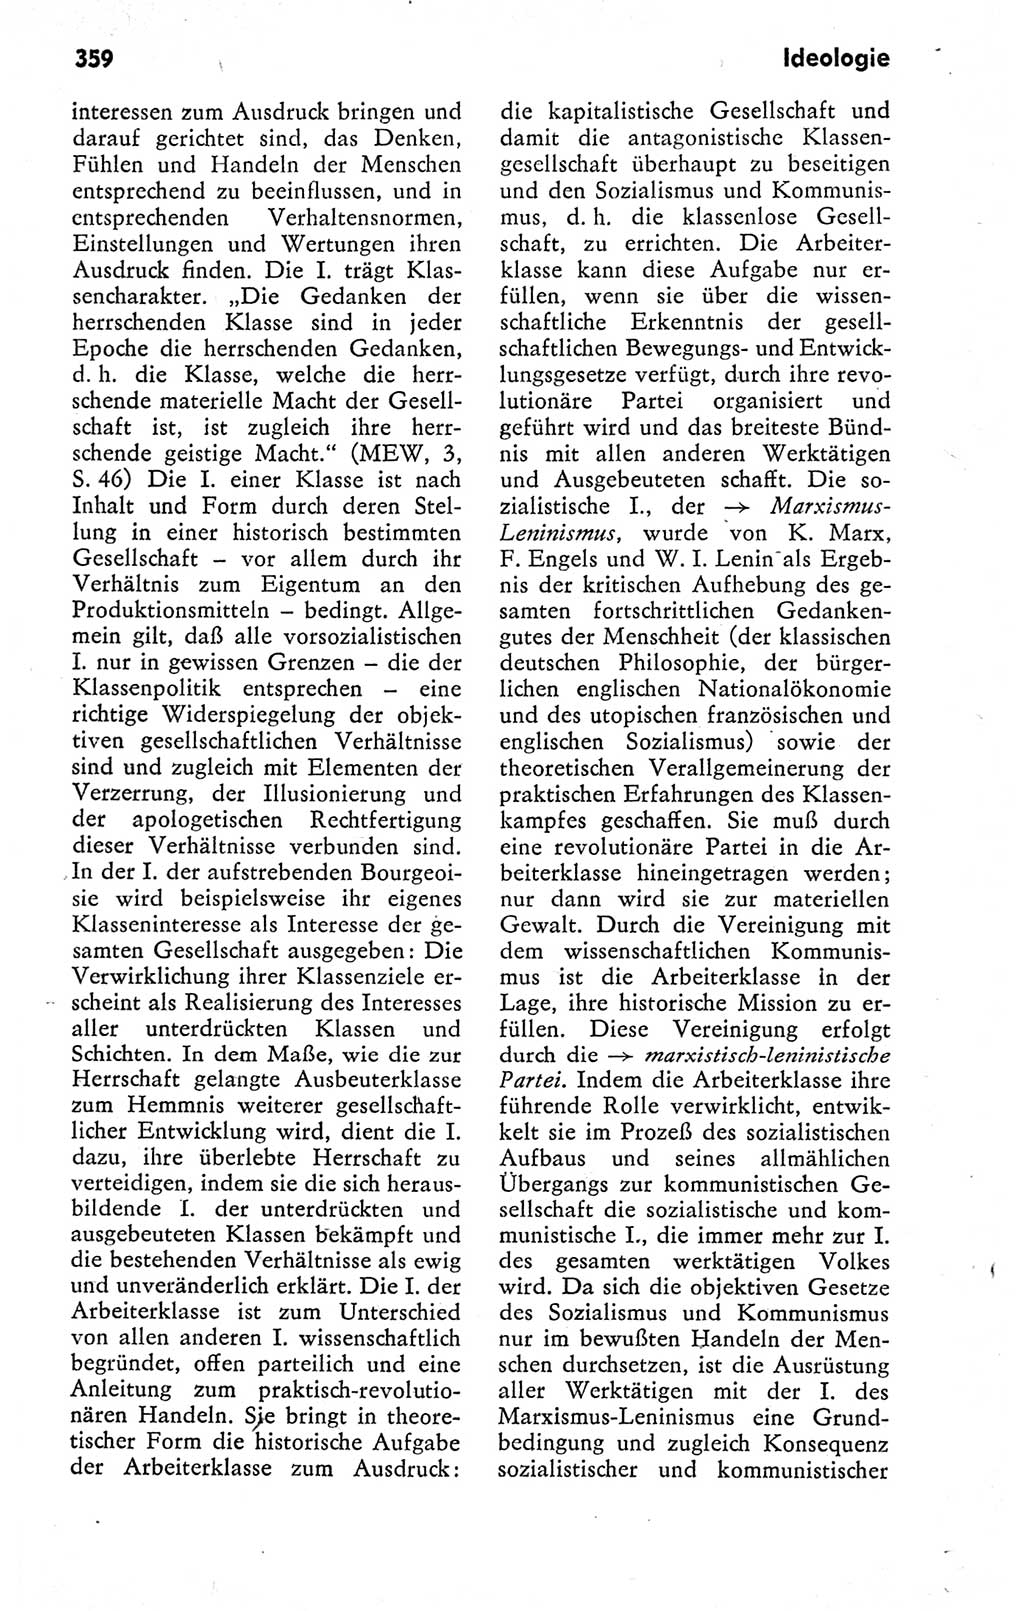 Kleines politisches Wörterbuch [Deutsche Demokratische Republik (DDR)] 1978, Seite 359 (Kl. pol. Wb. DDR 1978, S. 359)